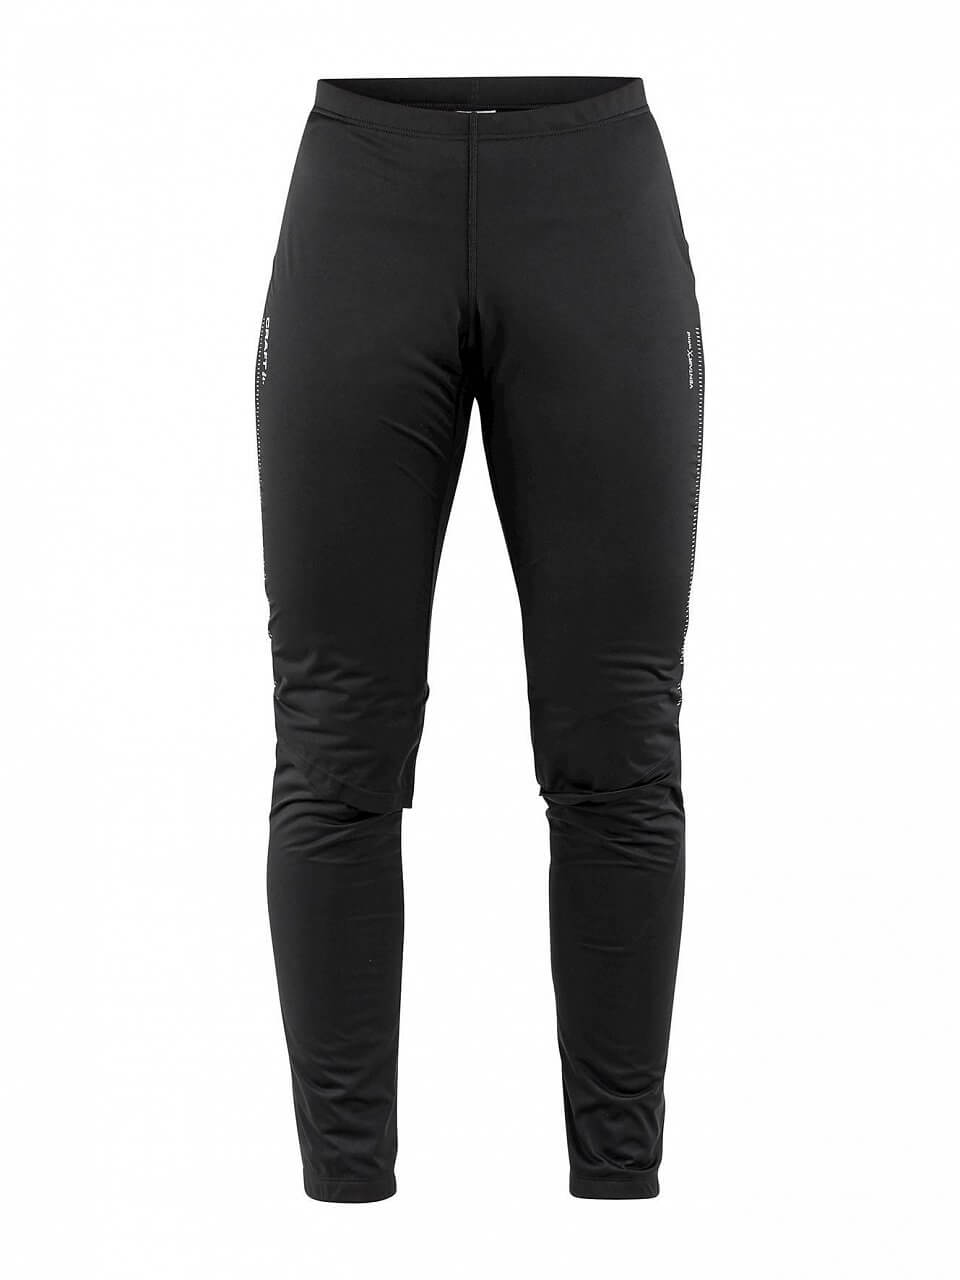 Dámské běžecké kalhoty Craft W Kalhoty Storm 2.0 černá